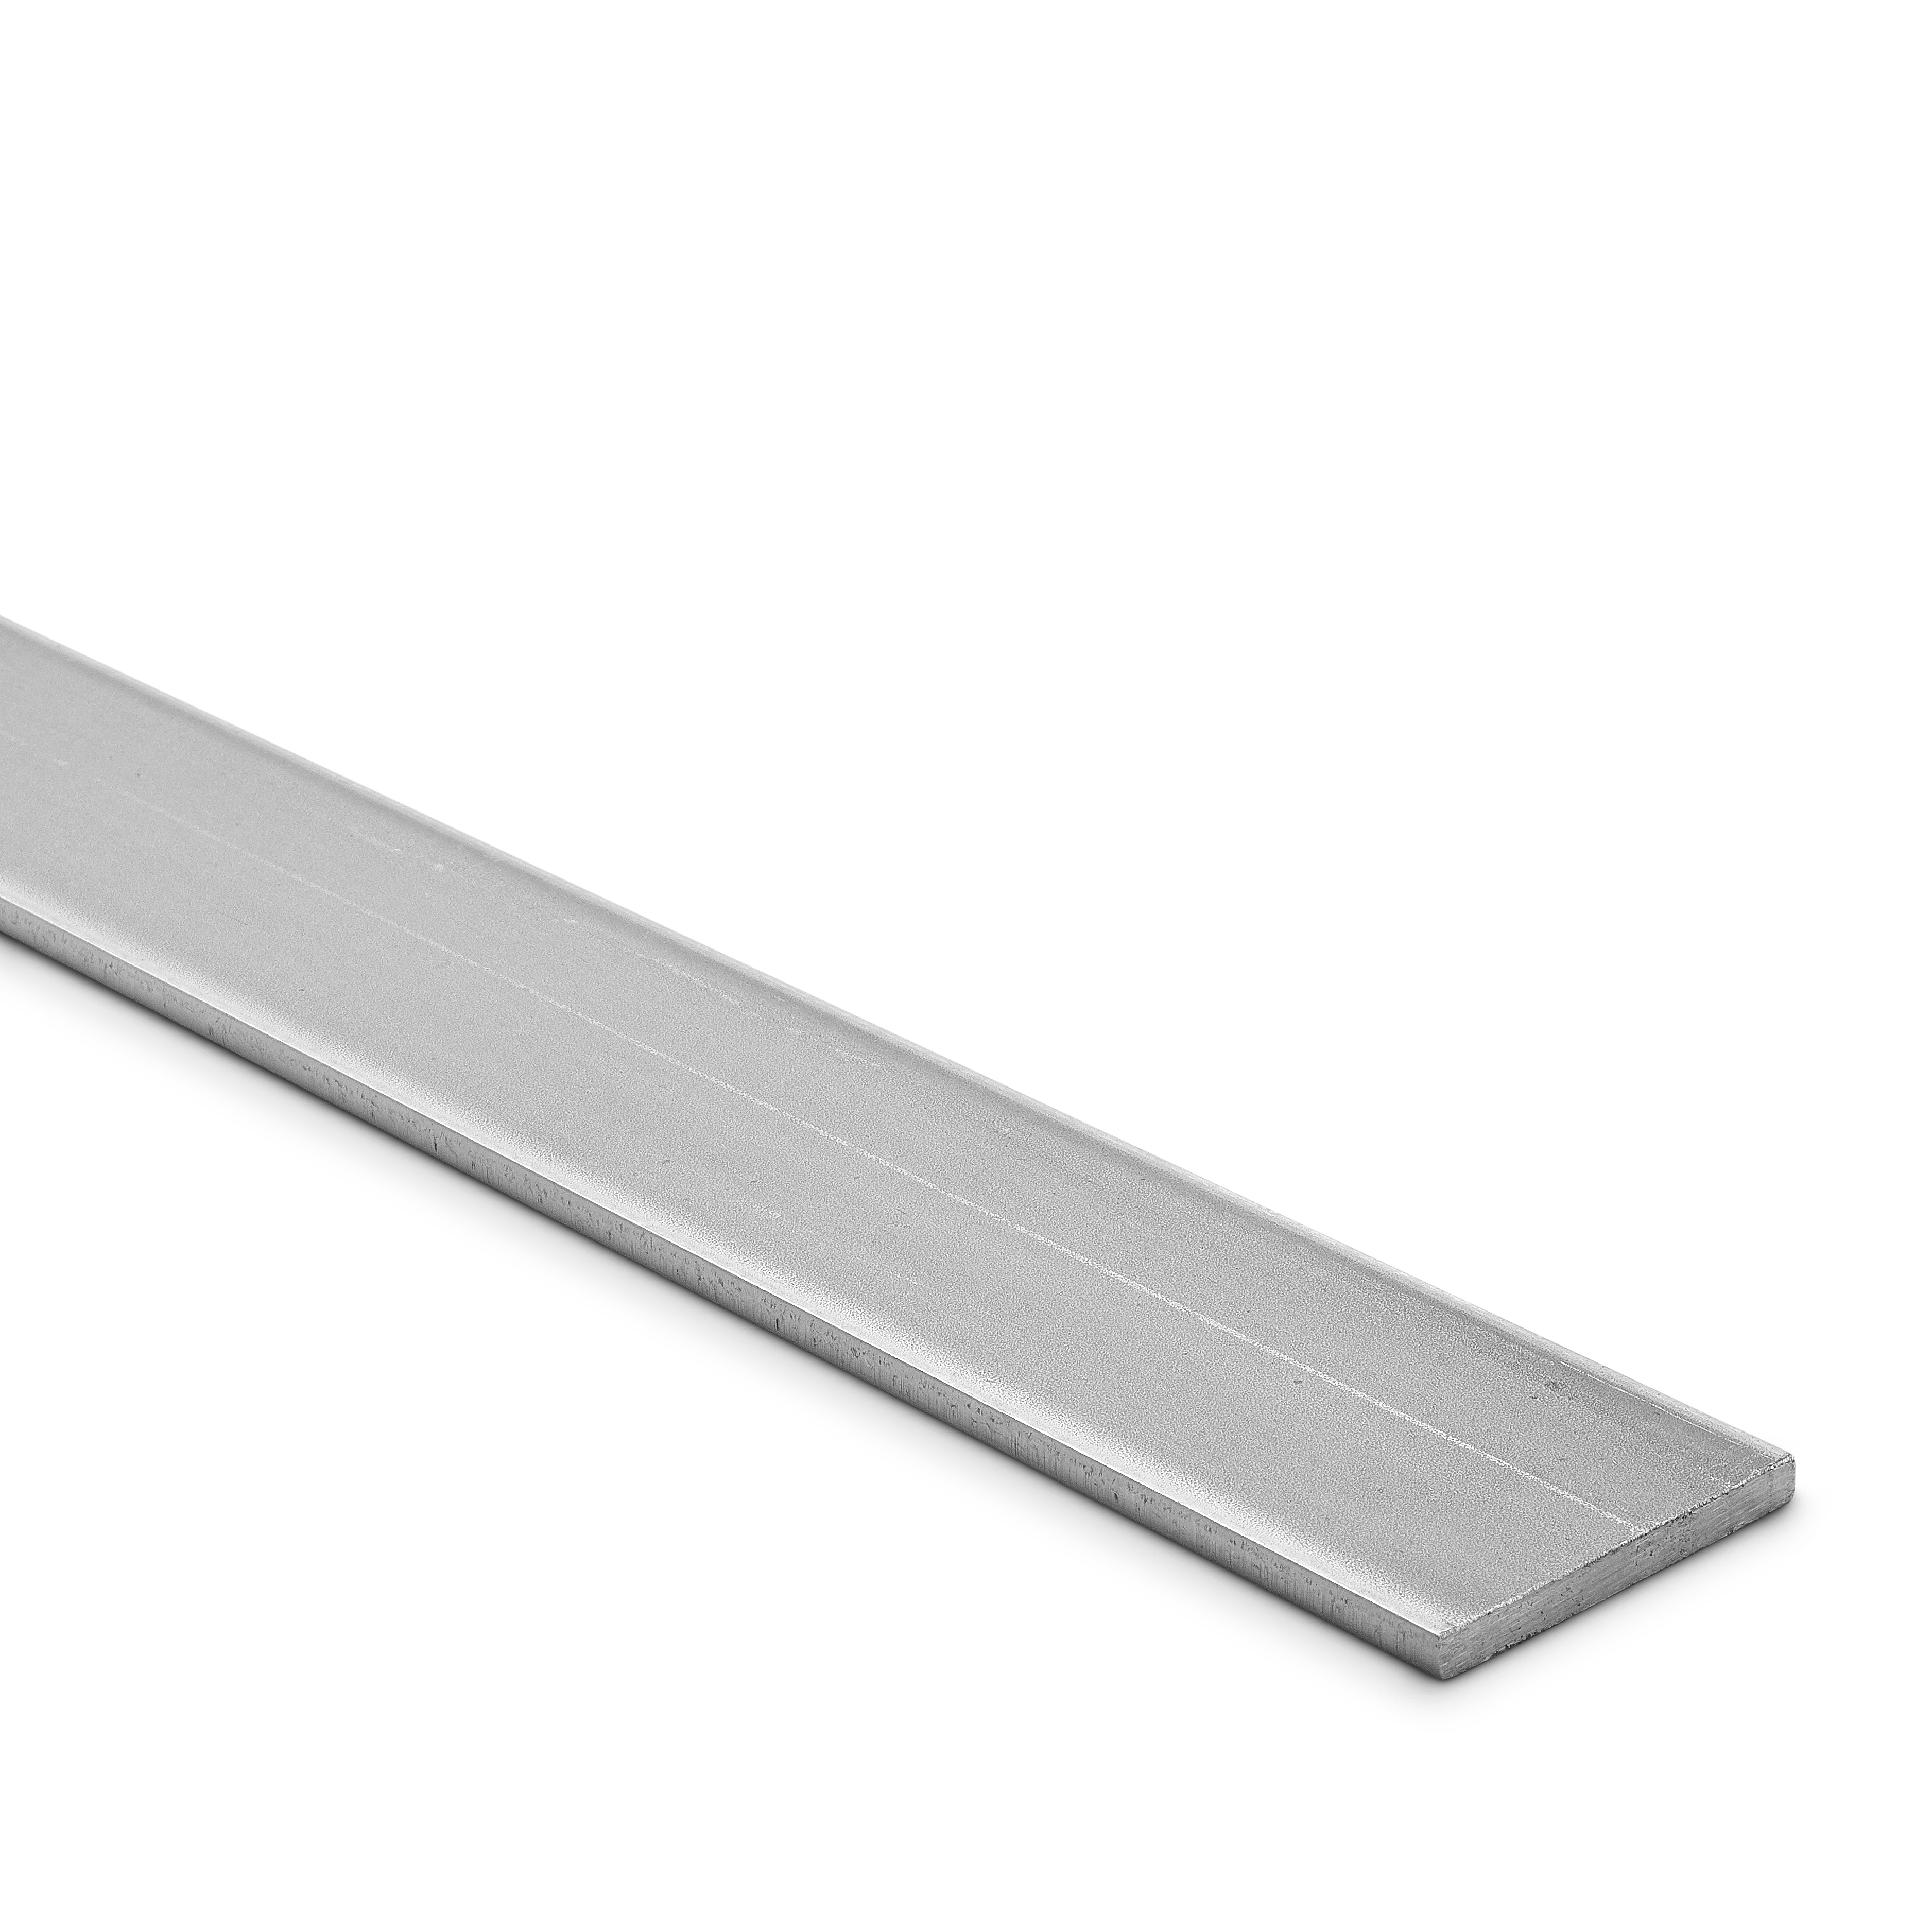 Flat steel Bar 70 x 5mm in 1Metre lengths 